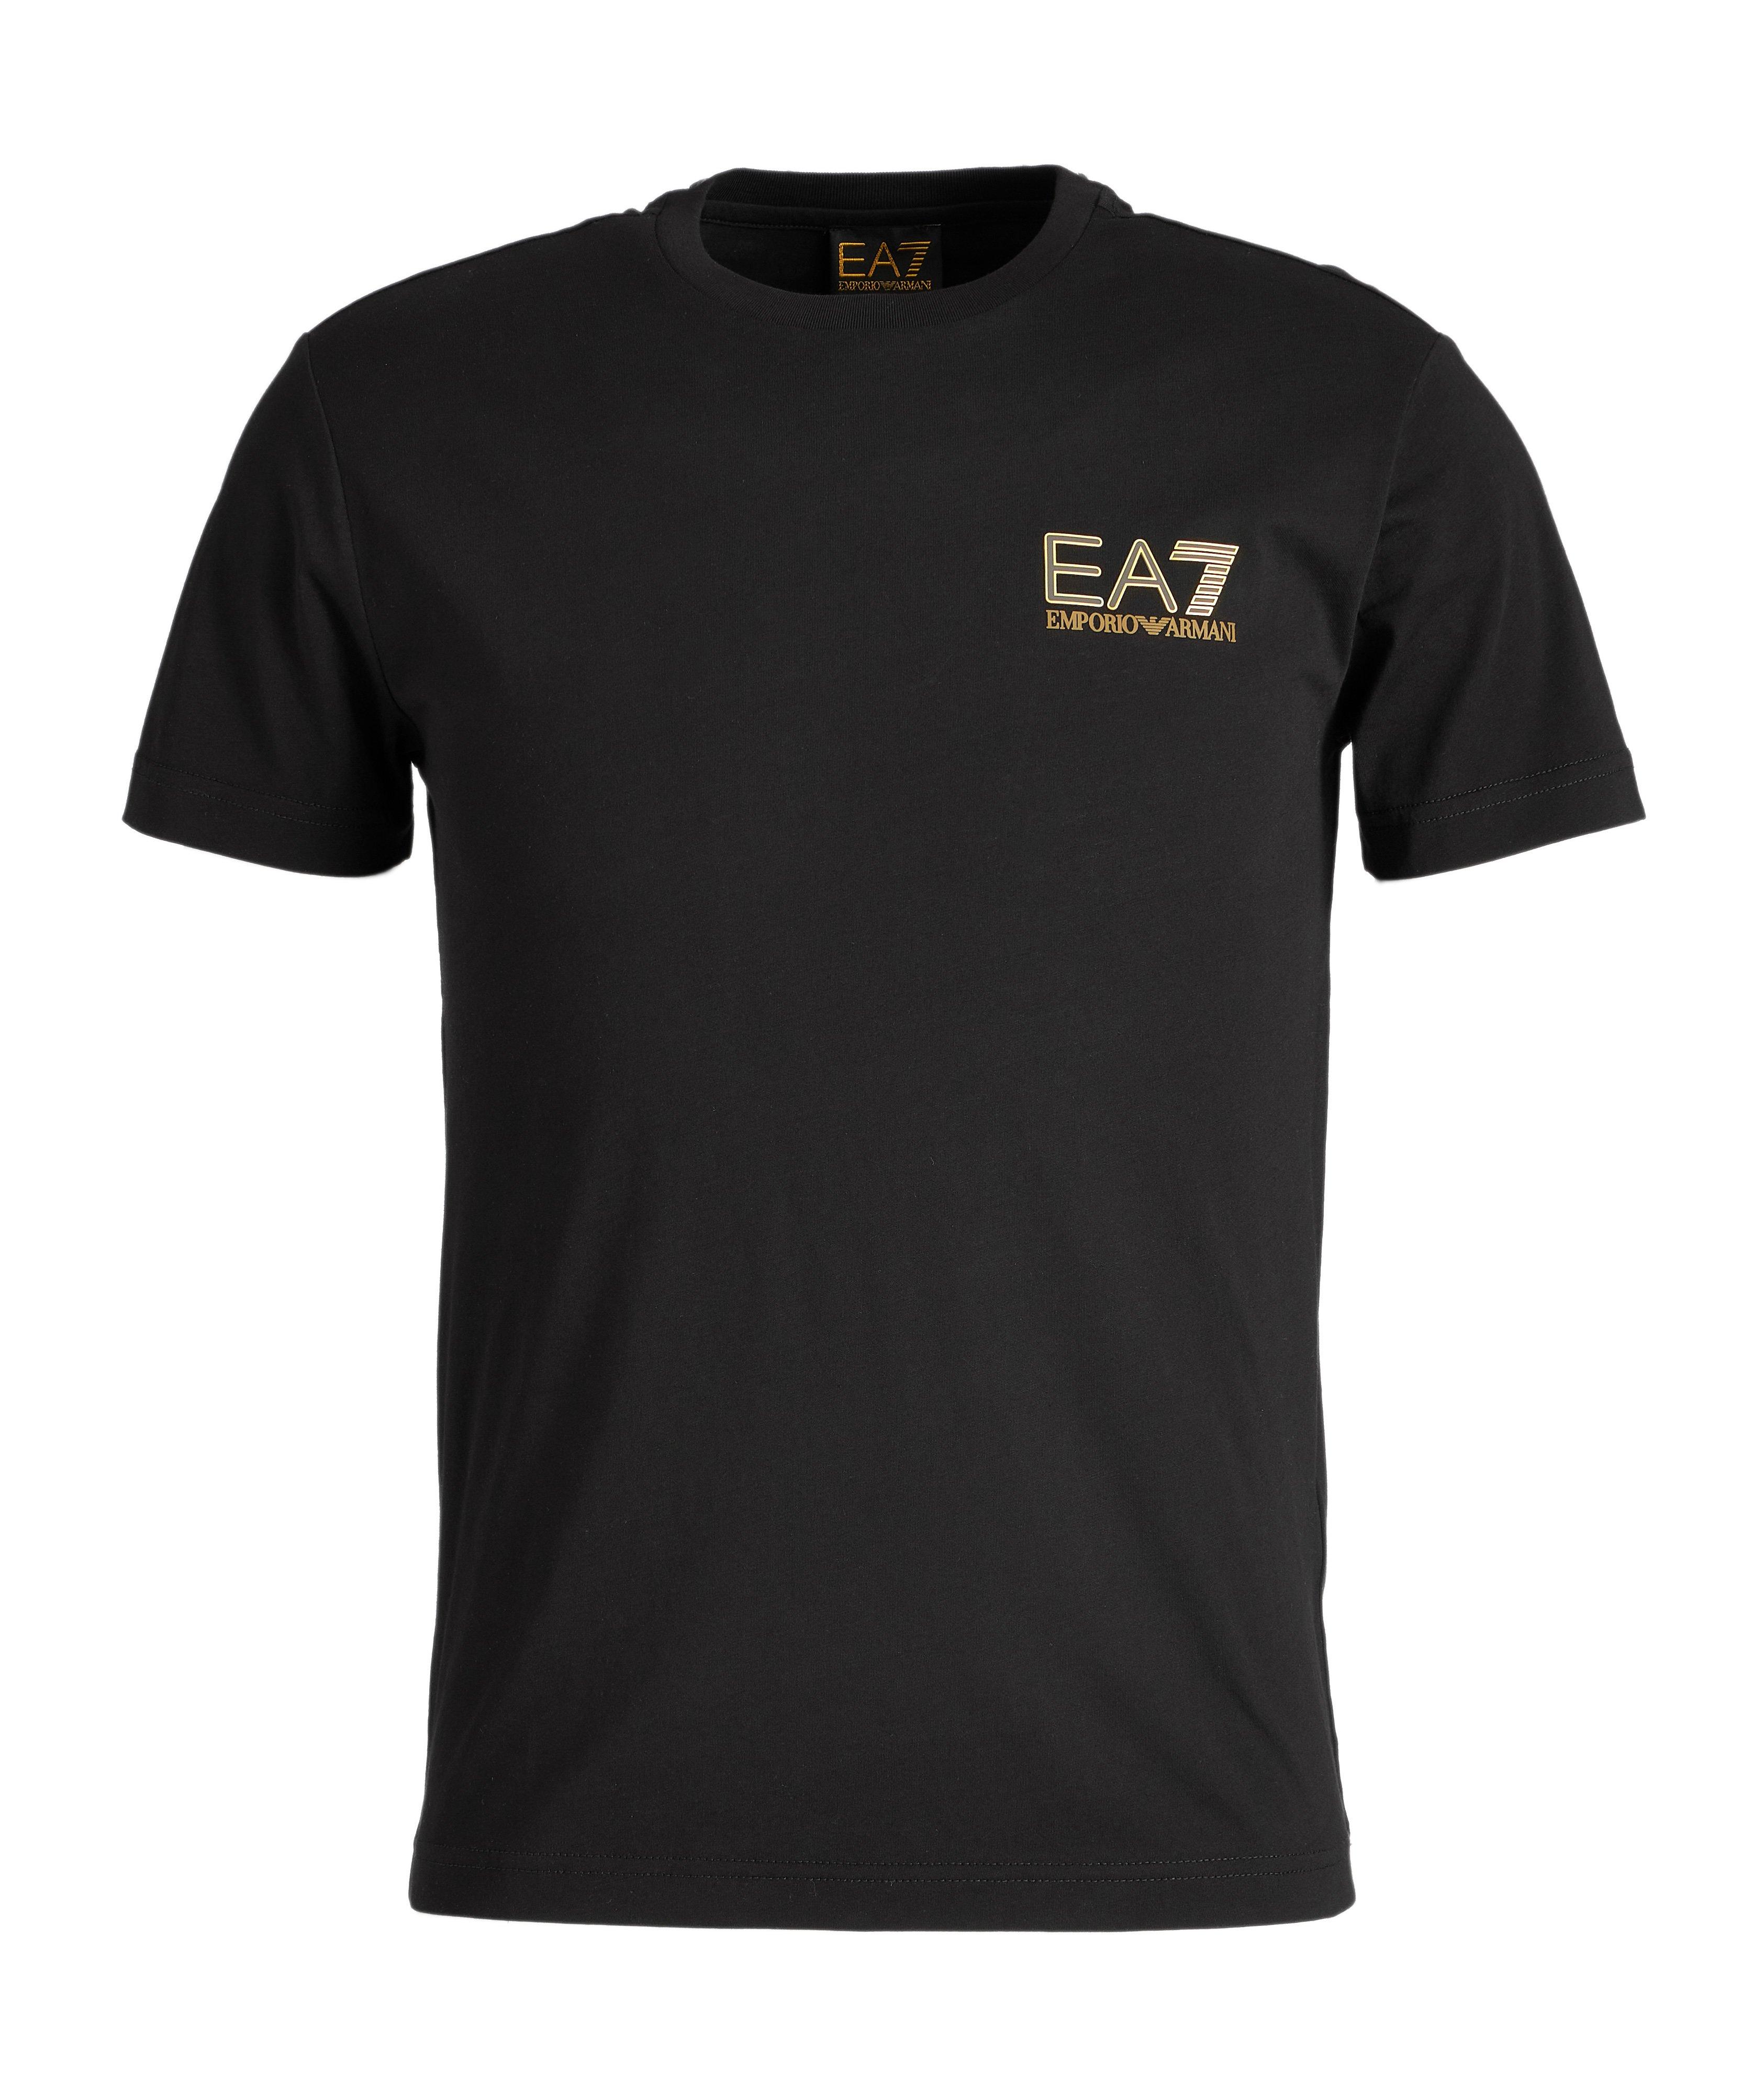 T-shirt en coton, collection EA7 image 0